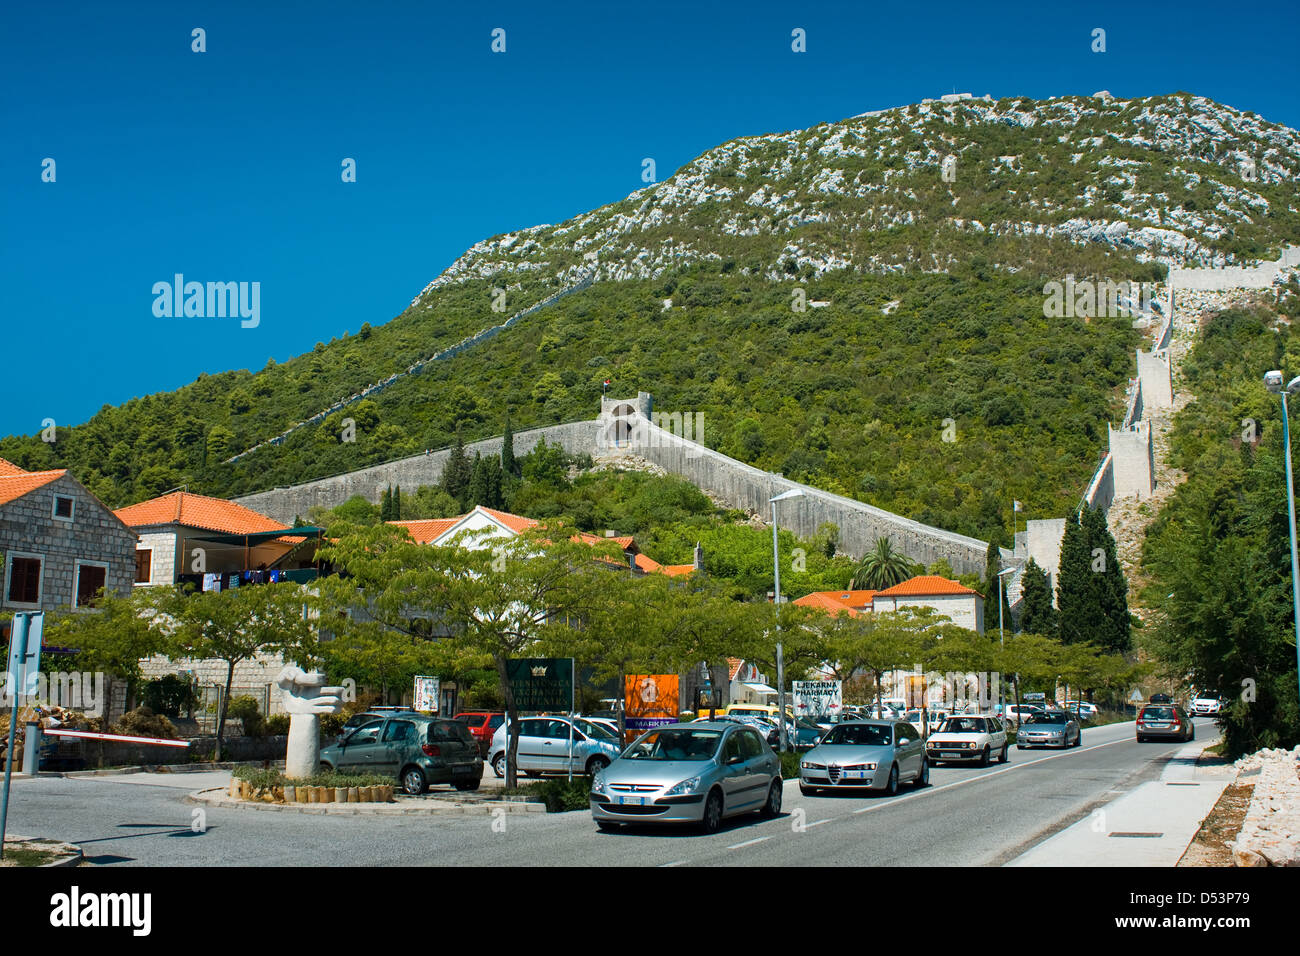 STON, Croazia - 16 agosto: storico muro in Ston, il 16 agosto 2012. Ston è una piccola cittadina situata vicino a Dubrovnik in Croazia. Foto Stock